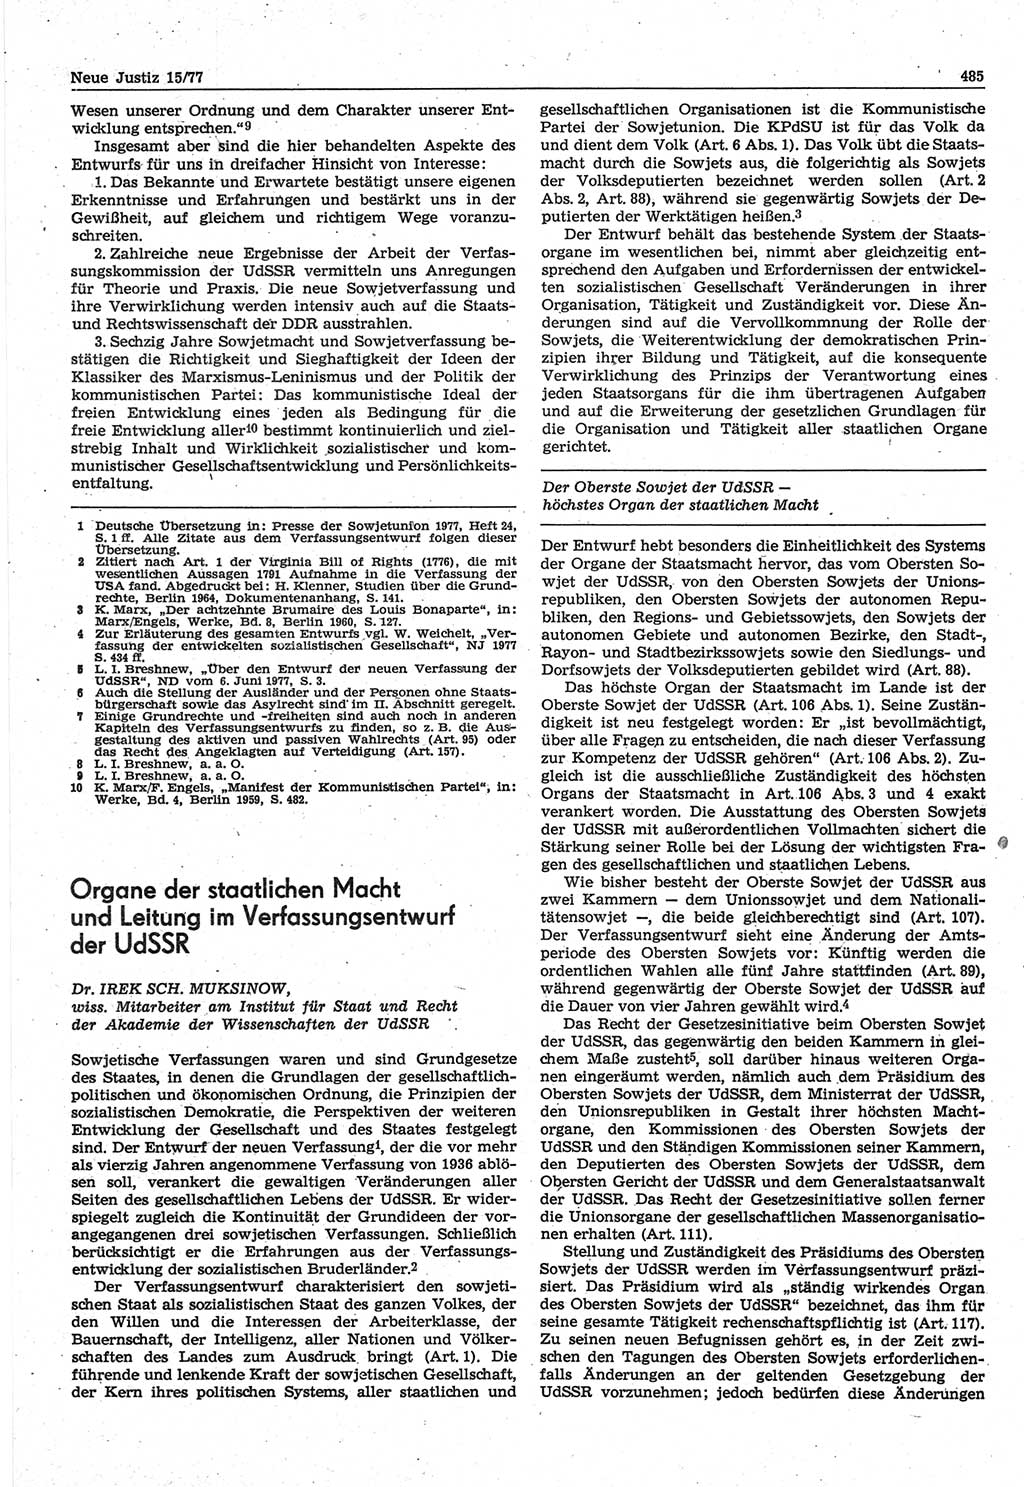 Neue Justiz (NJ), Zeitschrift für Recht und Rechtswissenschaft-Zeitschrift, sozialistisches Recht und Gesetzlichkeit, 31. Jahrgang 1977, Seite 485 (NJ DDR 1977, S. 485)